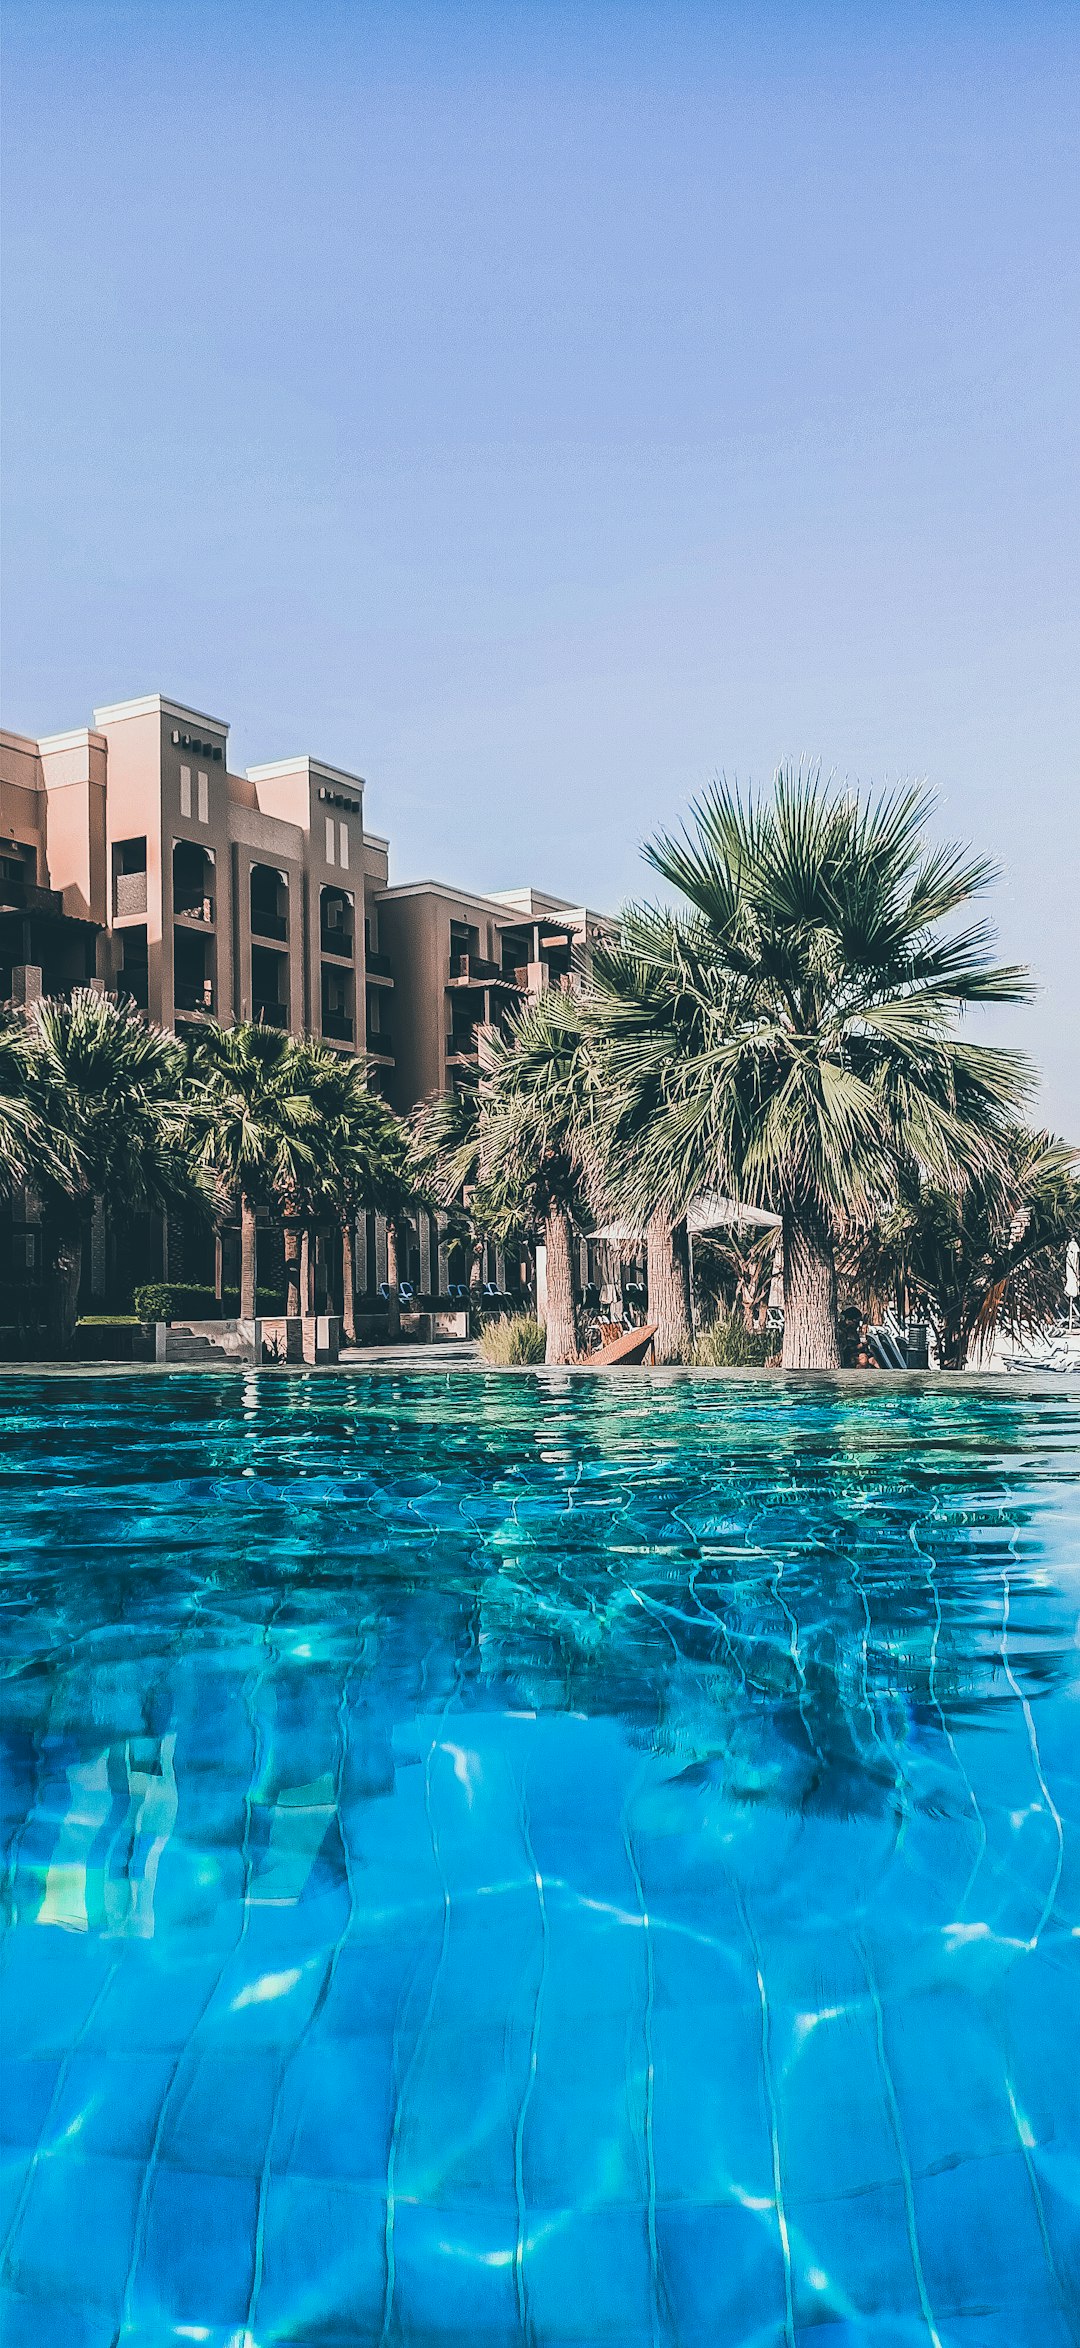 Resort photo spot Ras Al-Khaimah - Ras al Khaimah - United Arab Emirates Jumeira